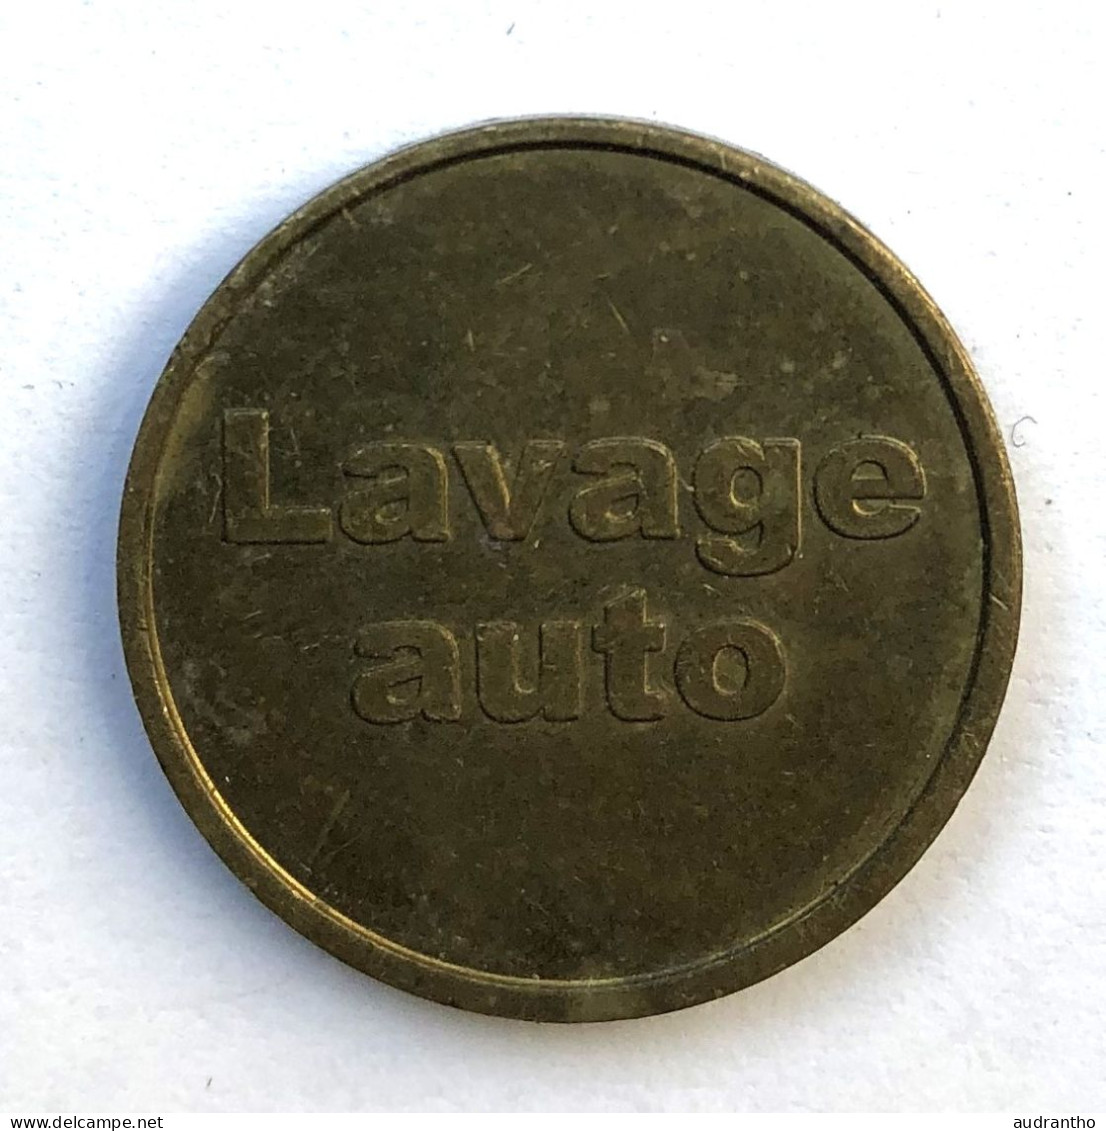 2 Jetons De Lavage Voiture - Centre De Lavage CBsquare Et Lavage Auto SDA - Monetary / Of Necessity